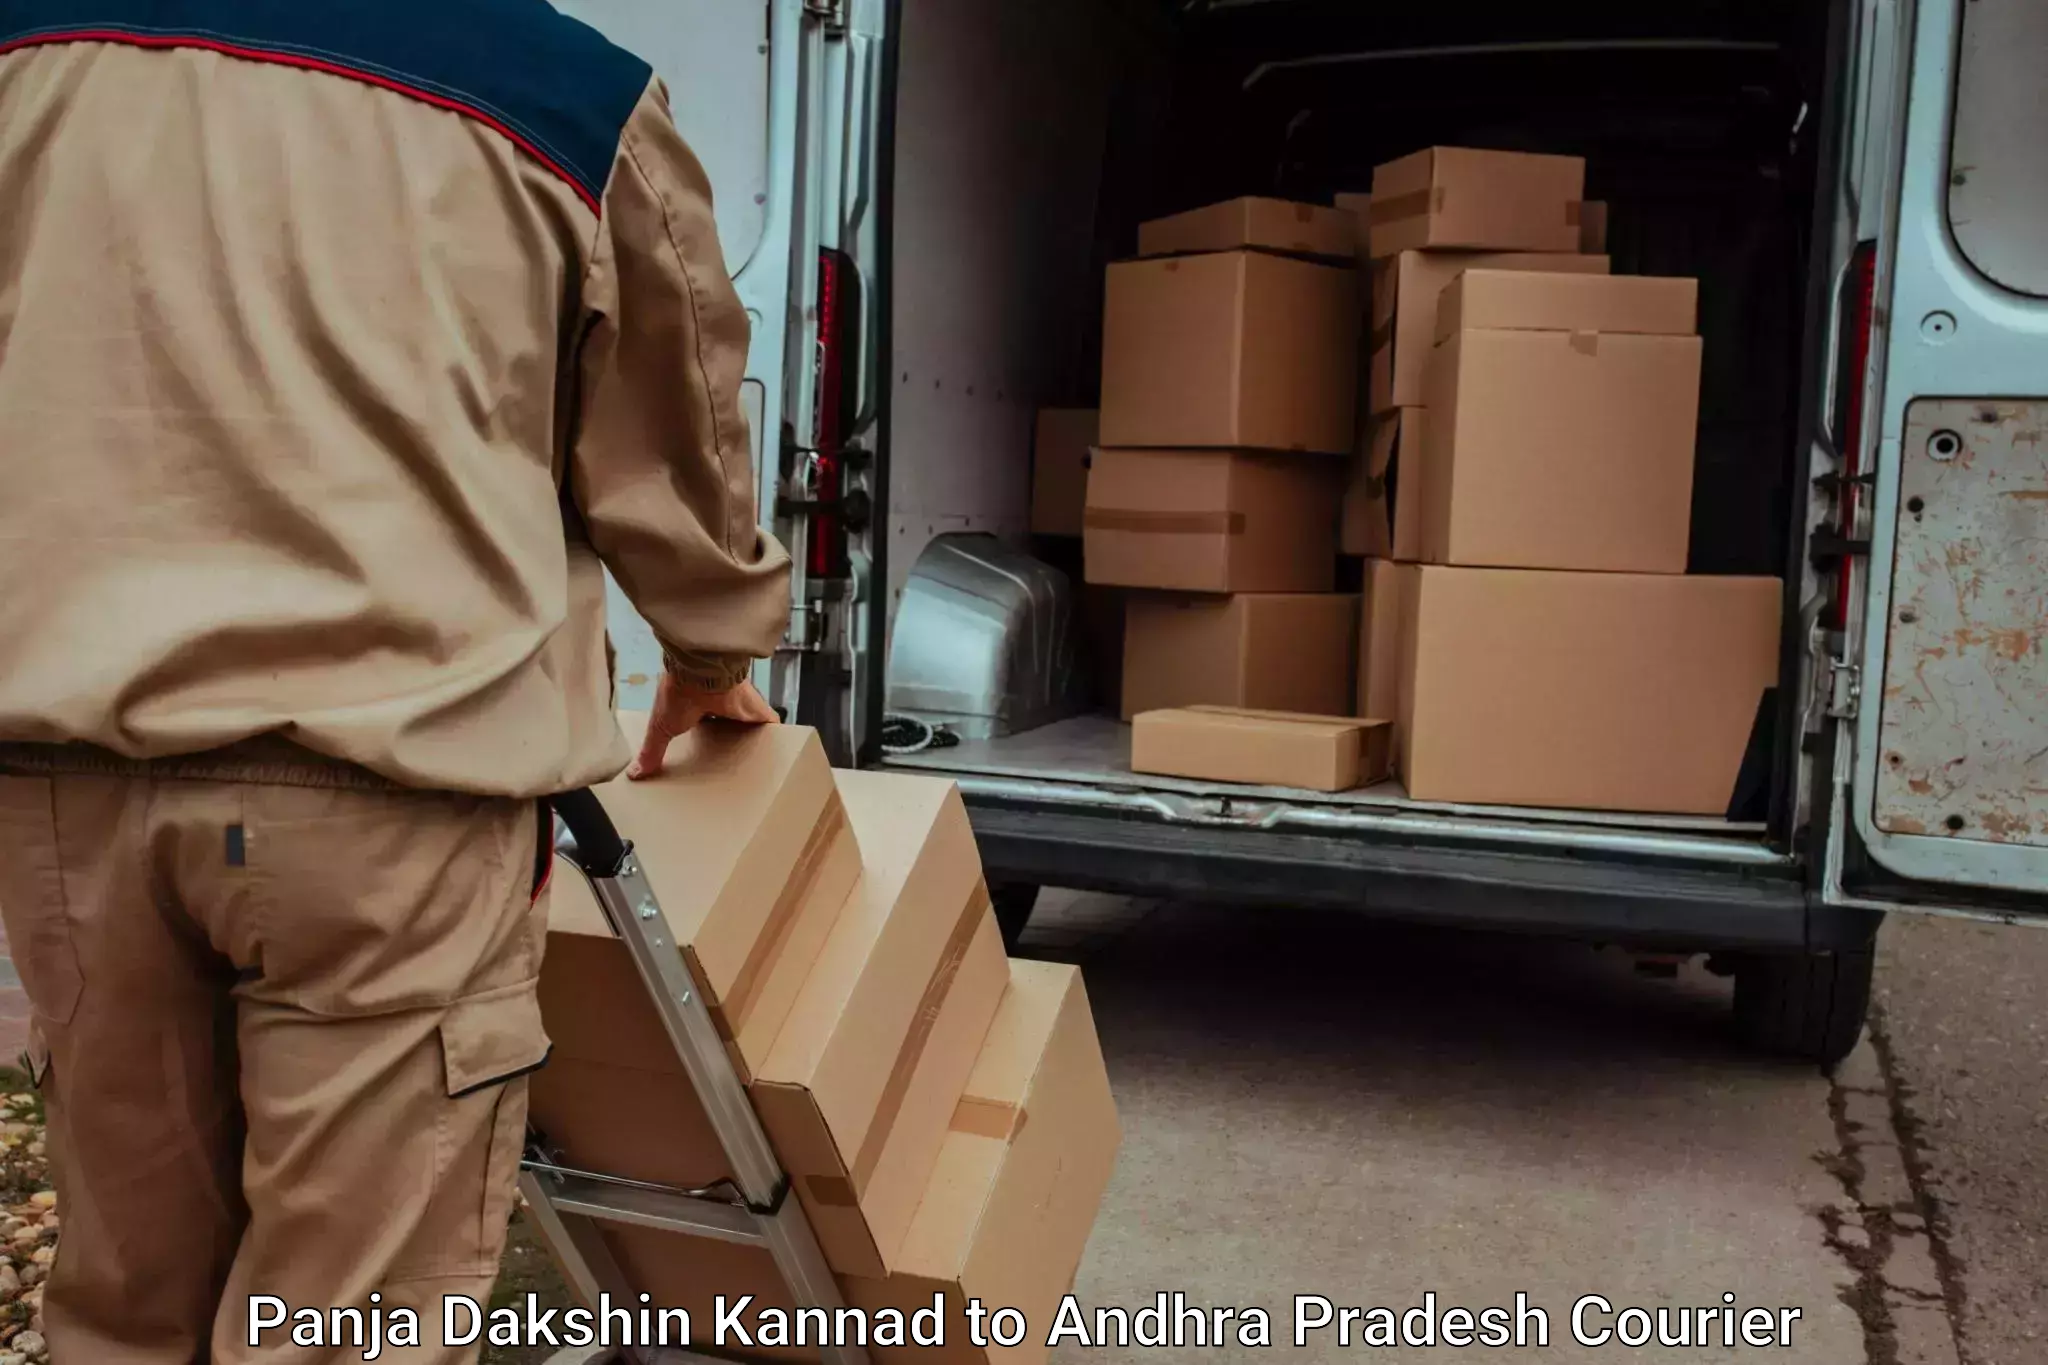 Furniture moving experts Panja Dakshin Kannad to Sri City